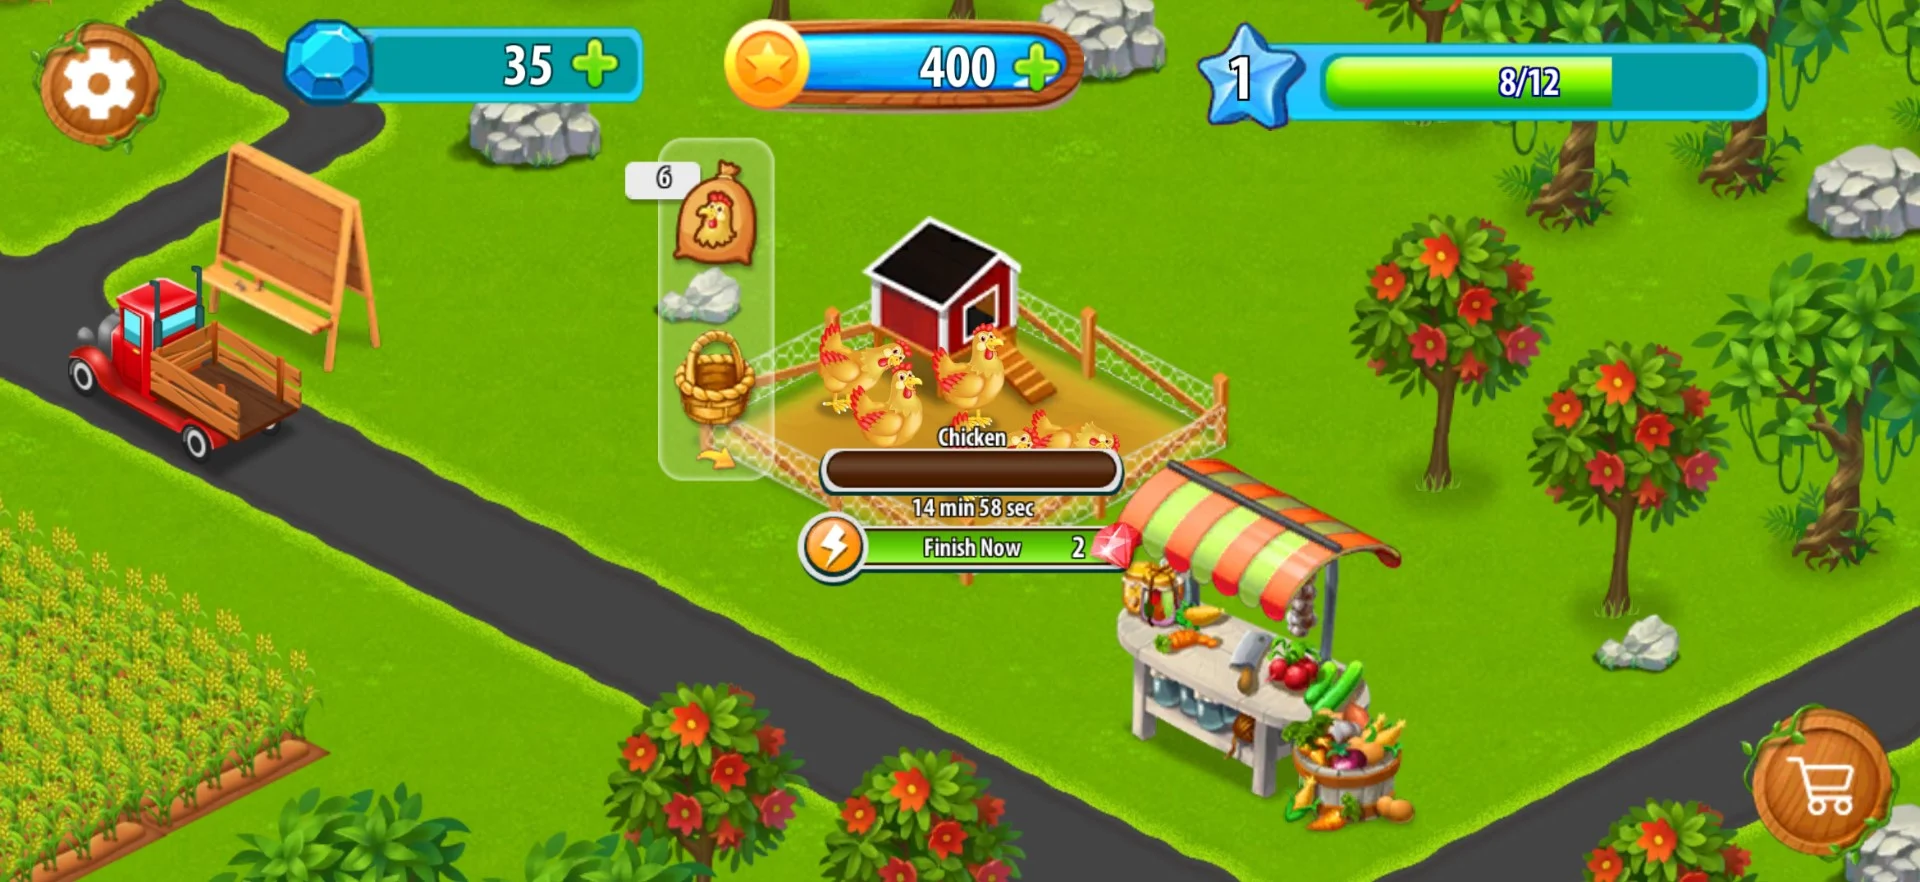 Tải Golden Farm Fantasy City Trên Pc Với Giả Lập - Ldplayer